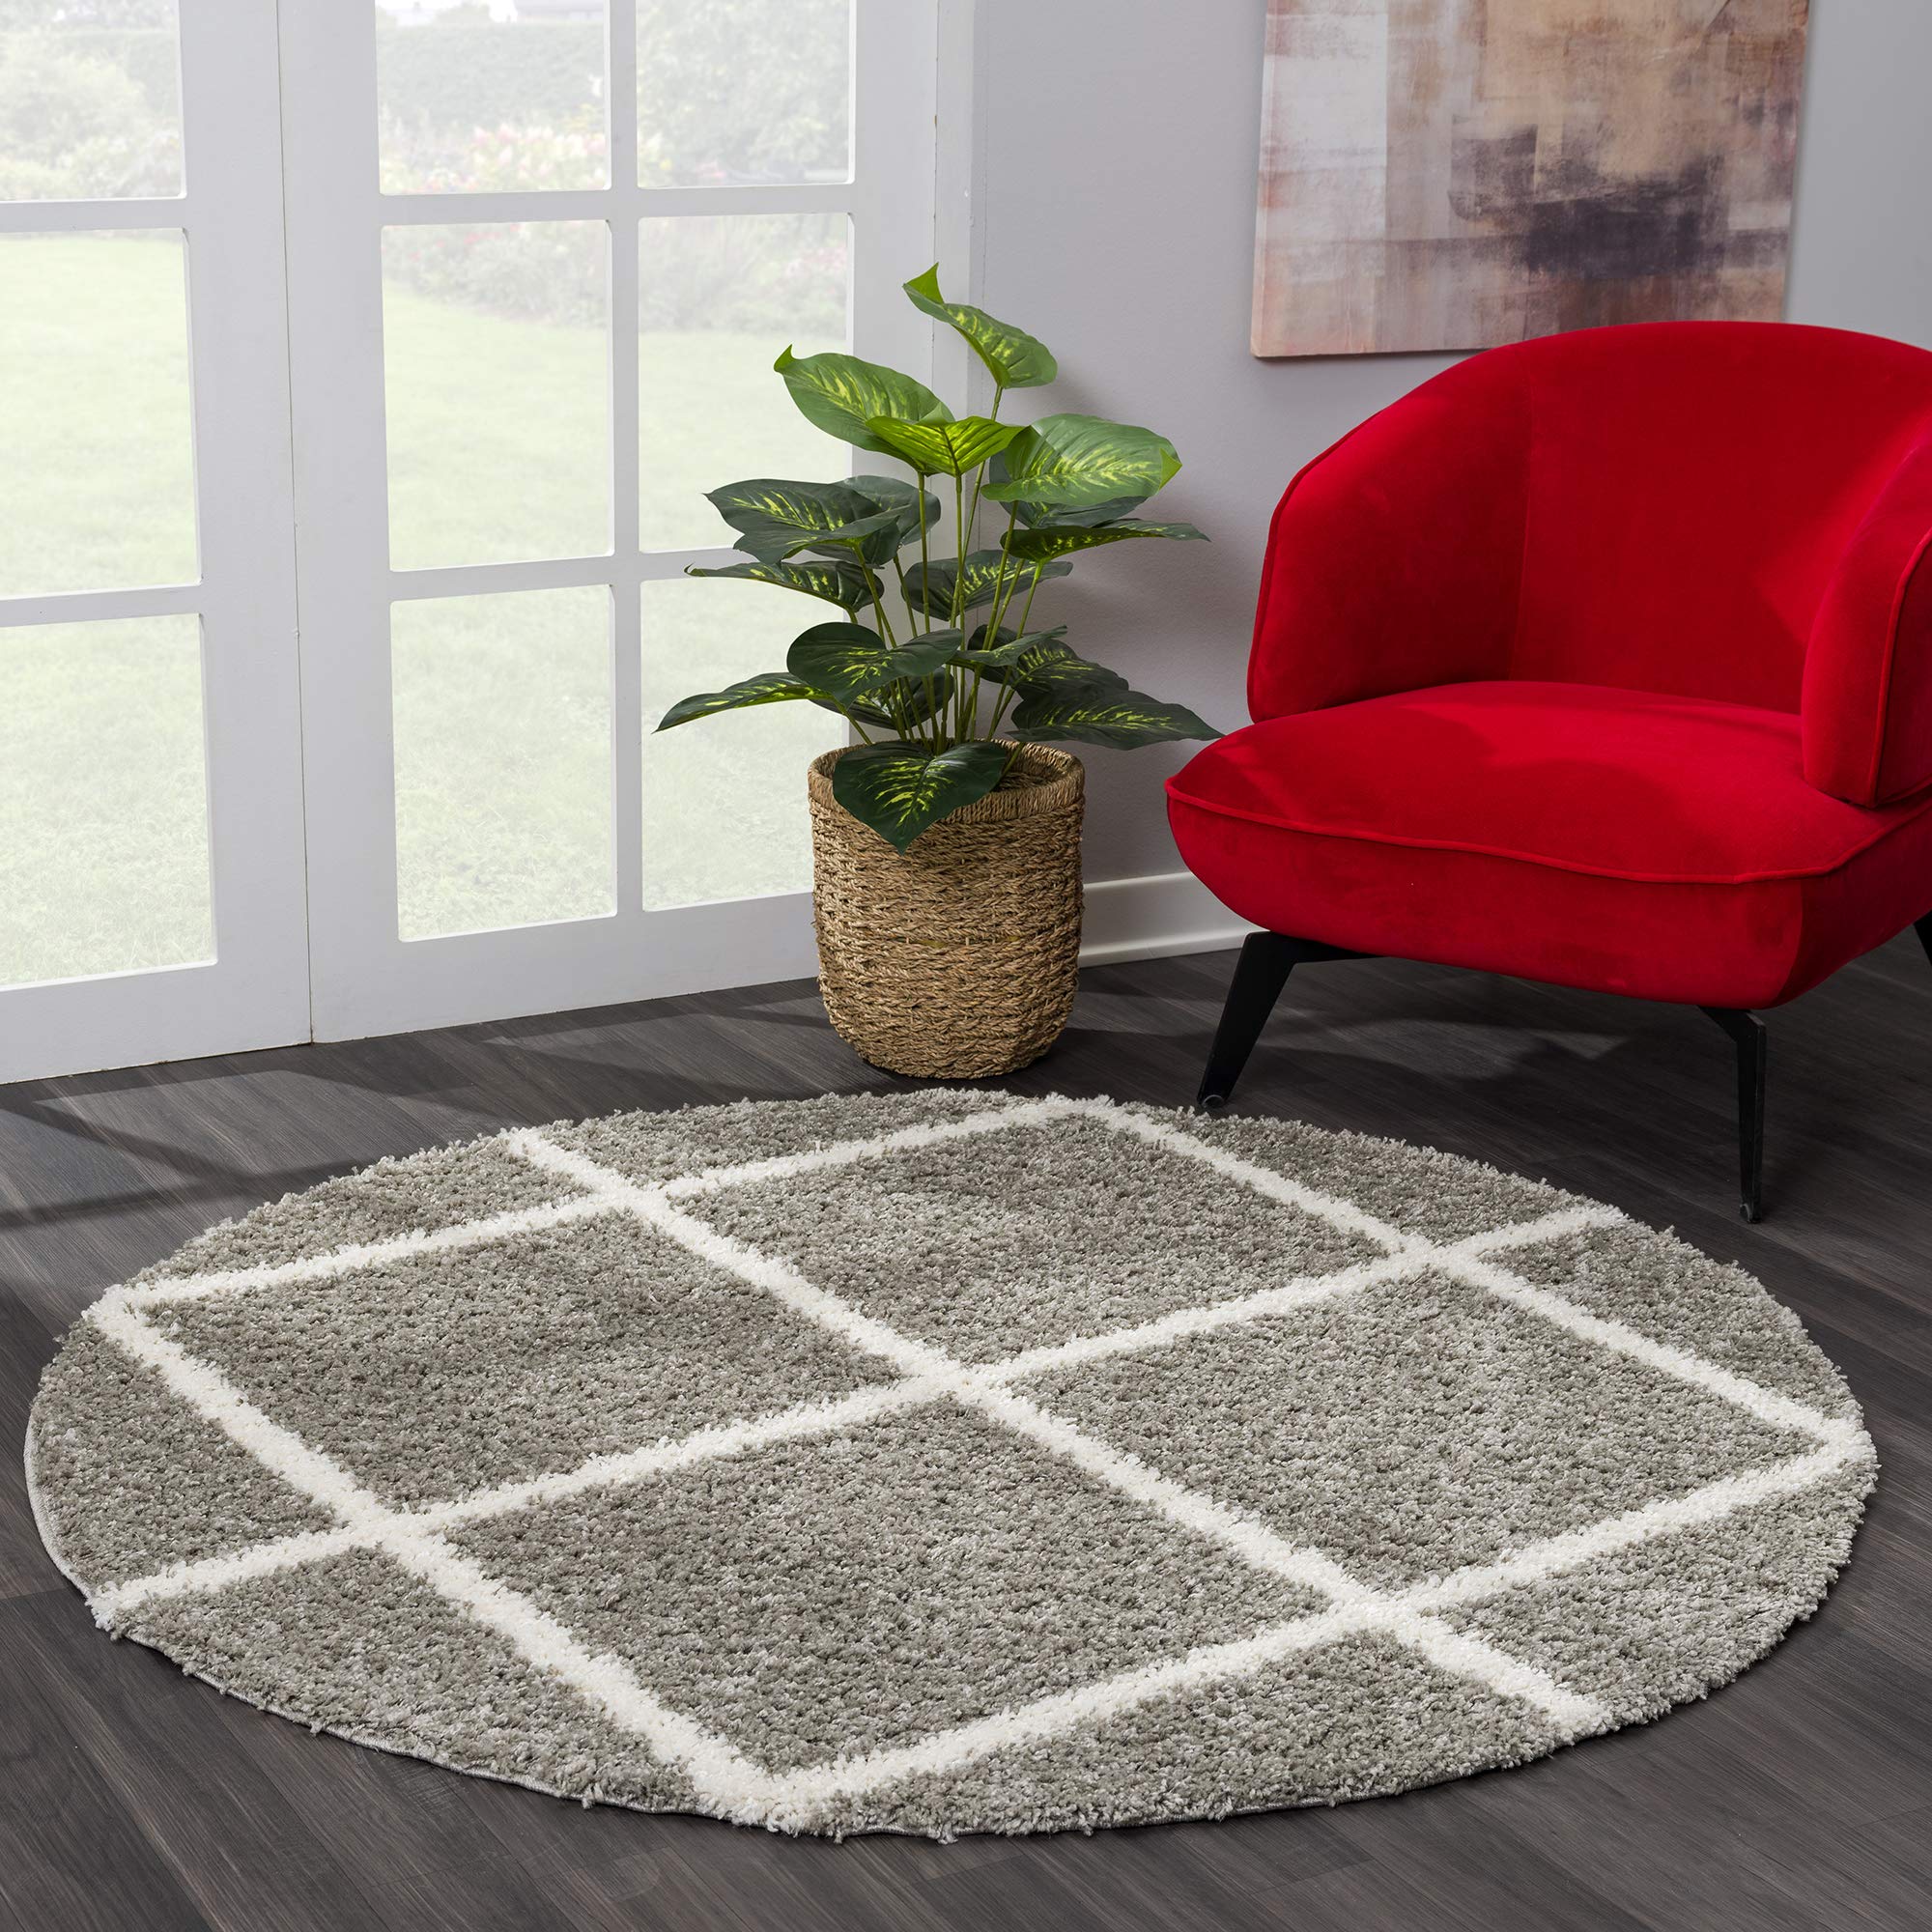 SANAT Madrid Shaggy Teppich Rund - Hochflor Teppiche für Wohnzimmer, Schlafzimmer, Küche - Grau, Größe: 150 cm